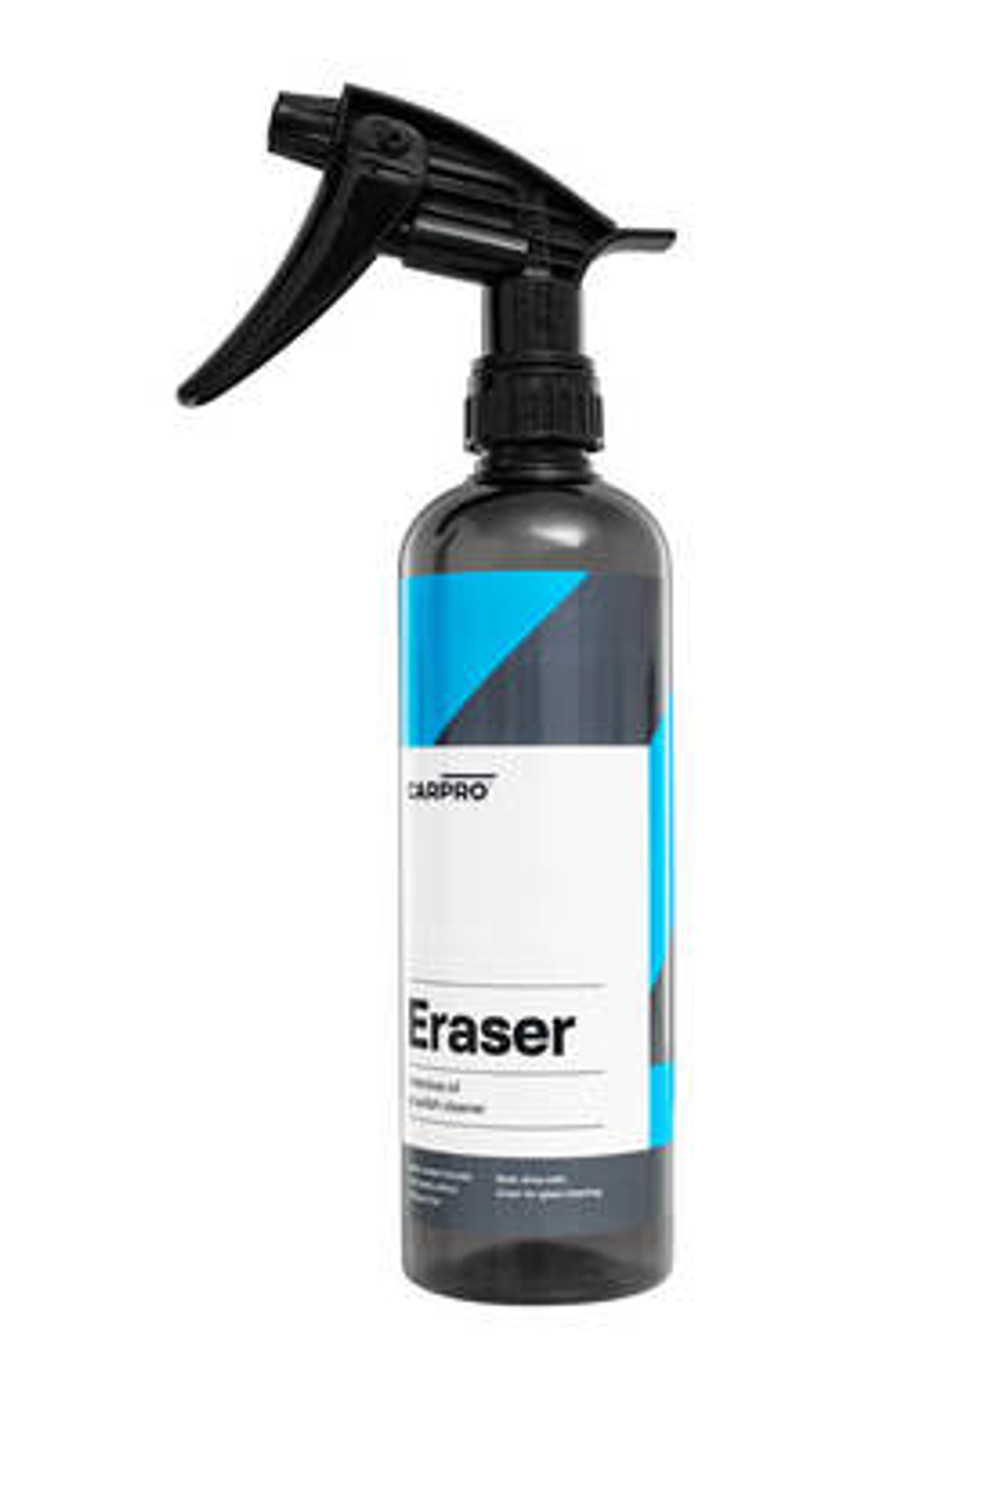 Carpro Eraser 500ml - Auto-Brite